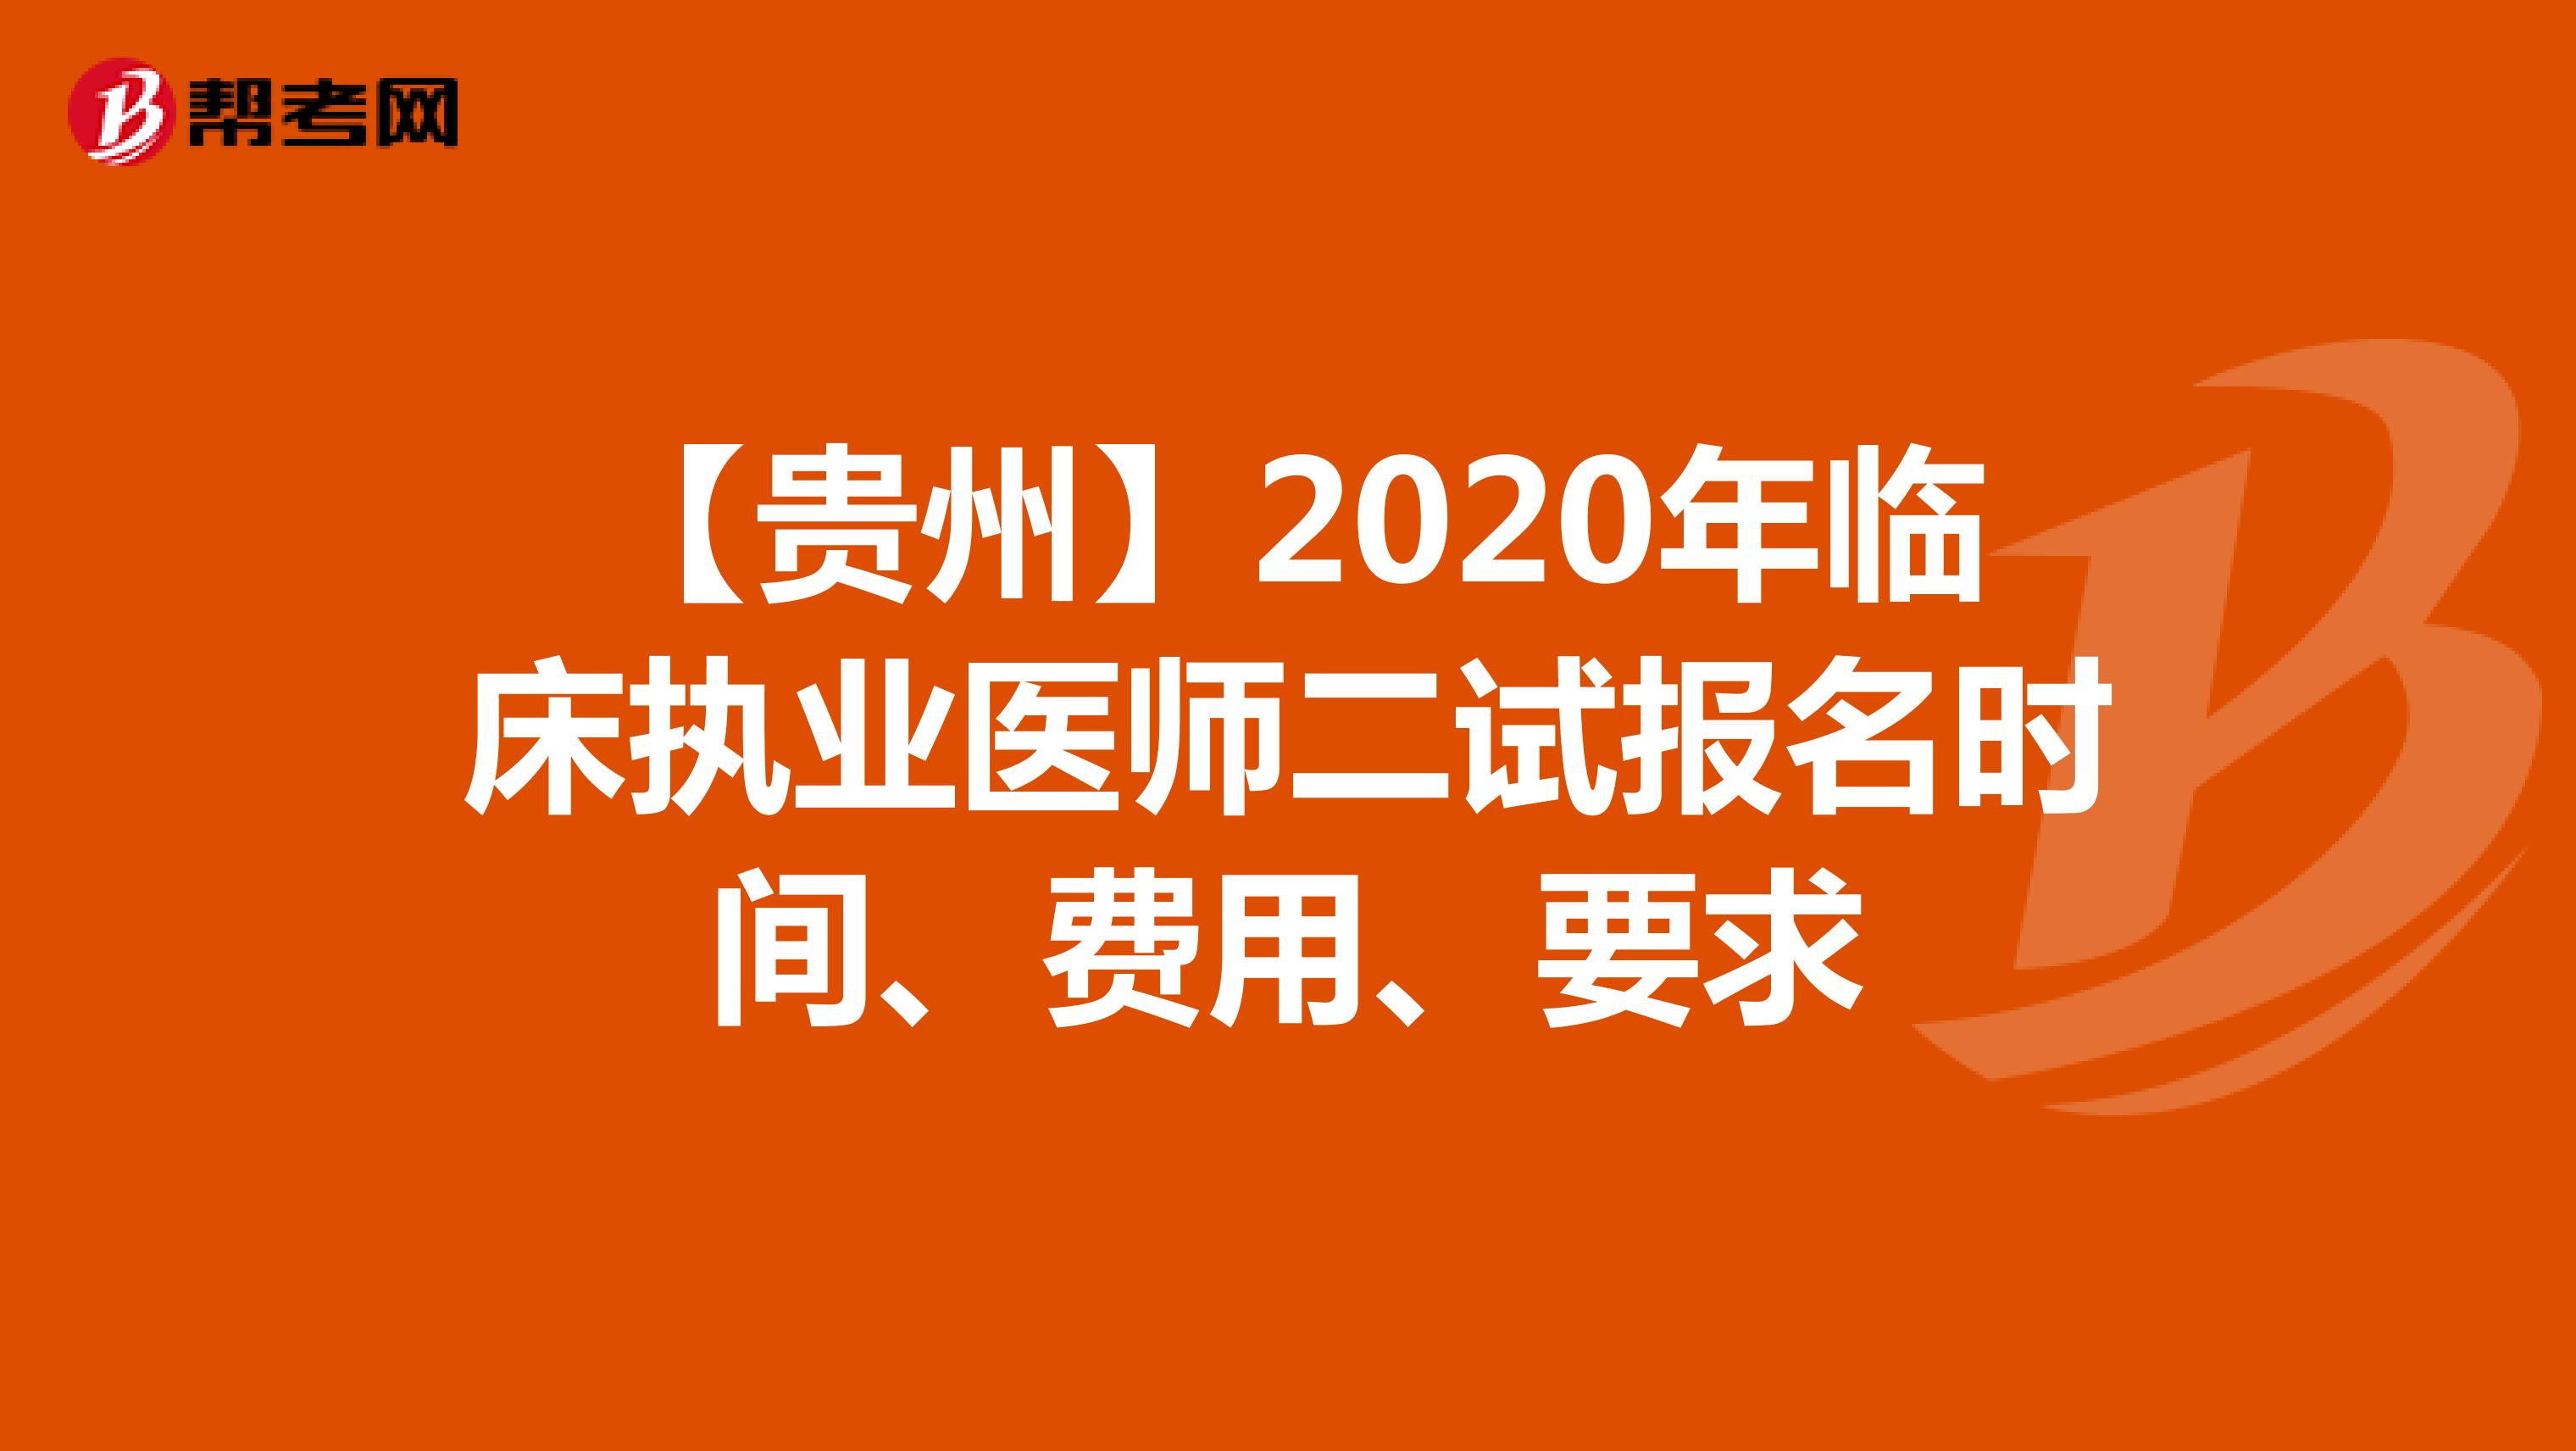 【贵州】2020年临床执业医师二试报名时间、费用、要求